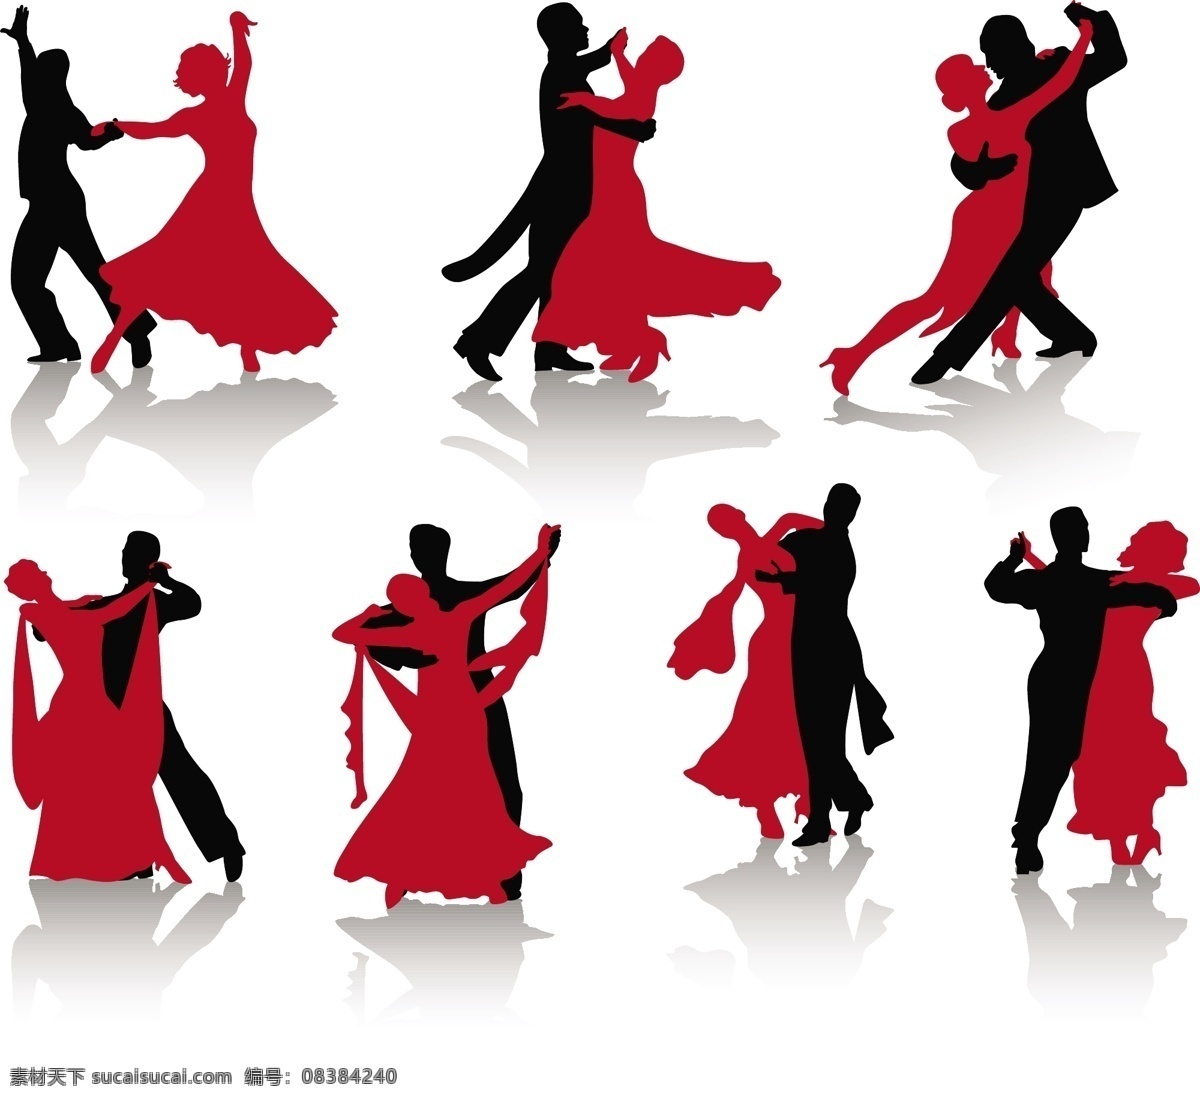 跳舞人物 舞蹈人物 交际舞矢量图 漫画舞蹈 拉丁舞 跳舞 舞蹈 交际舞 矢量人物 其他人物 矢量图库